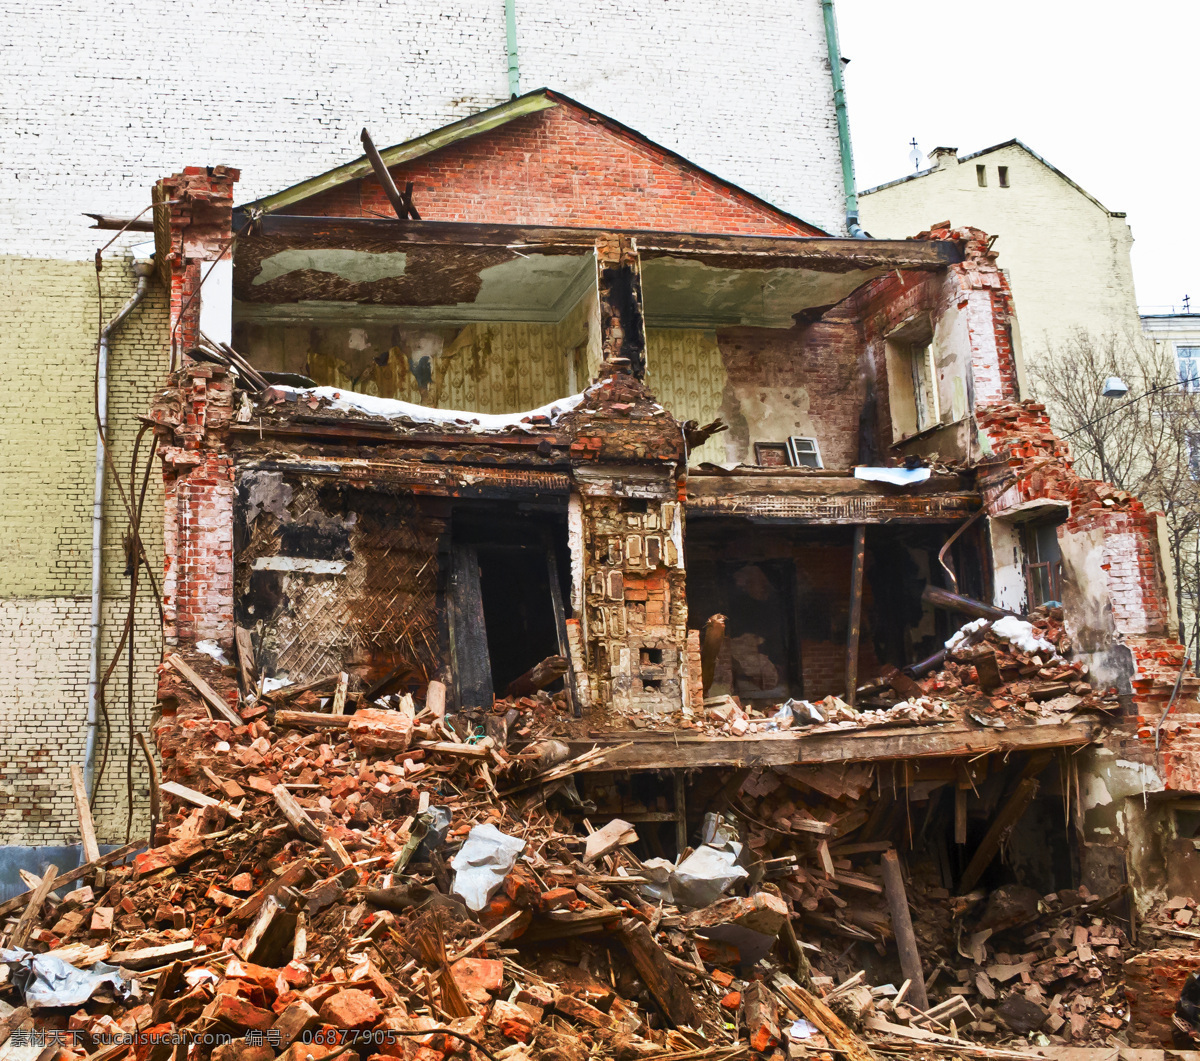 倒塌的房子 损坏的建筑 破旧的建筑 倒塌的建筑 老房屋 建筑 建筑图片 废弃的建筑 废墟 其他类别 环境家居 黑色